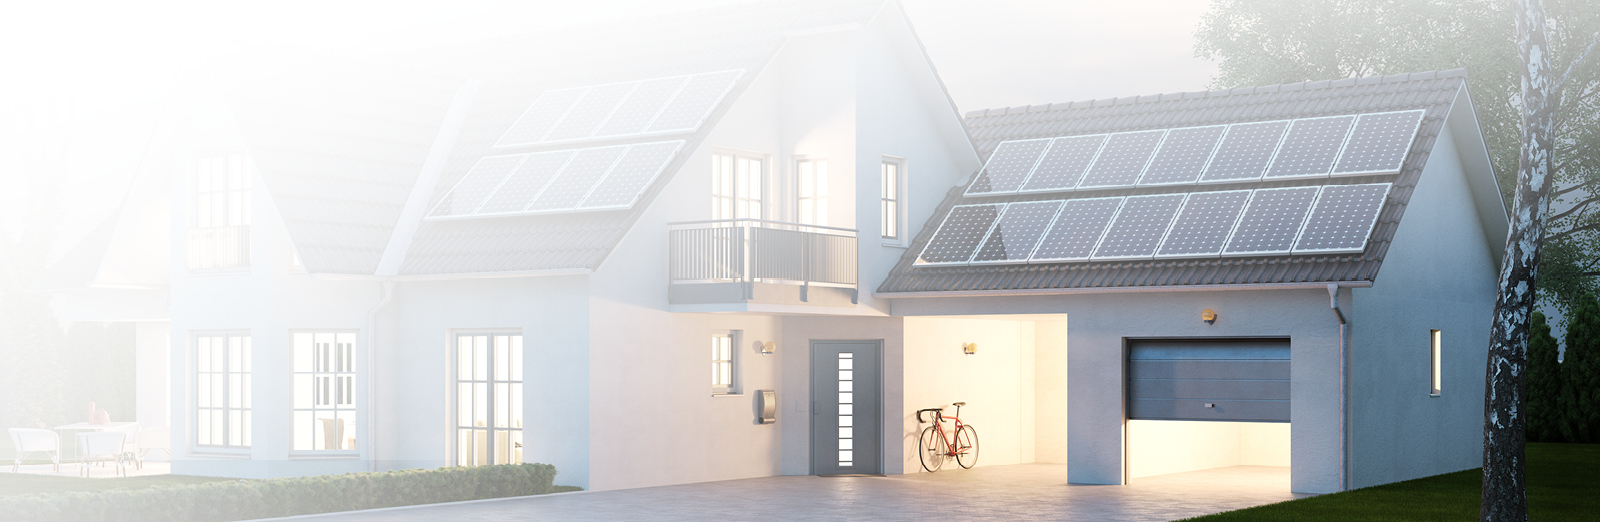 Sauberer Strom mit Photovoltaik für Ihr Eigenheim